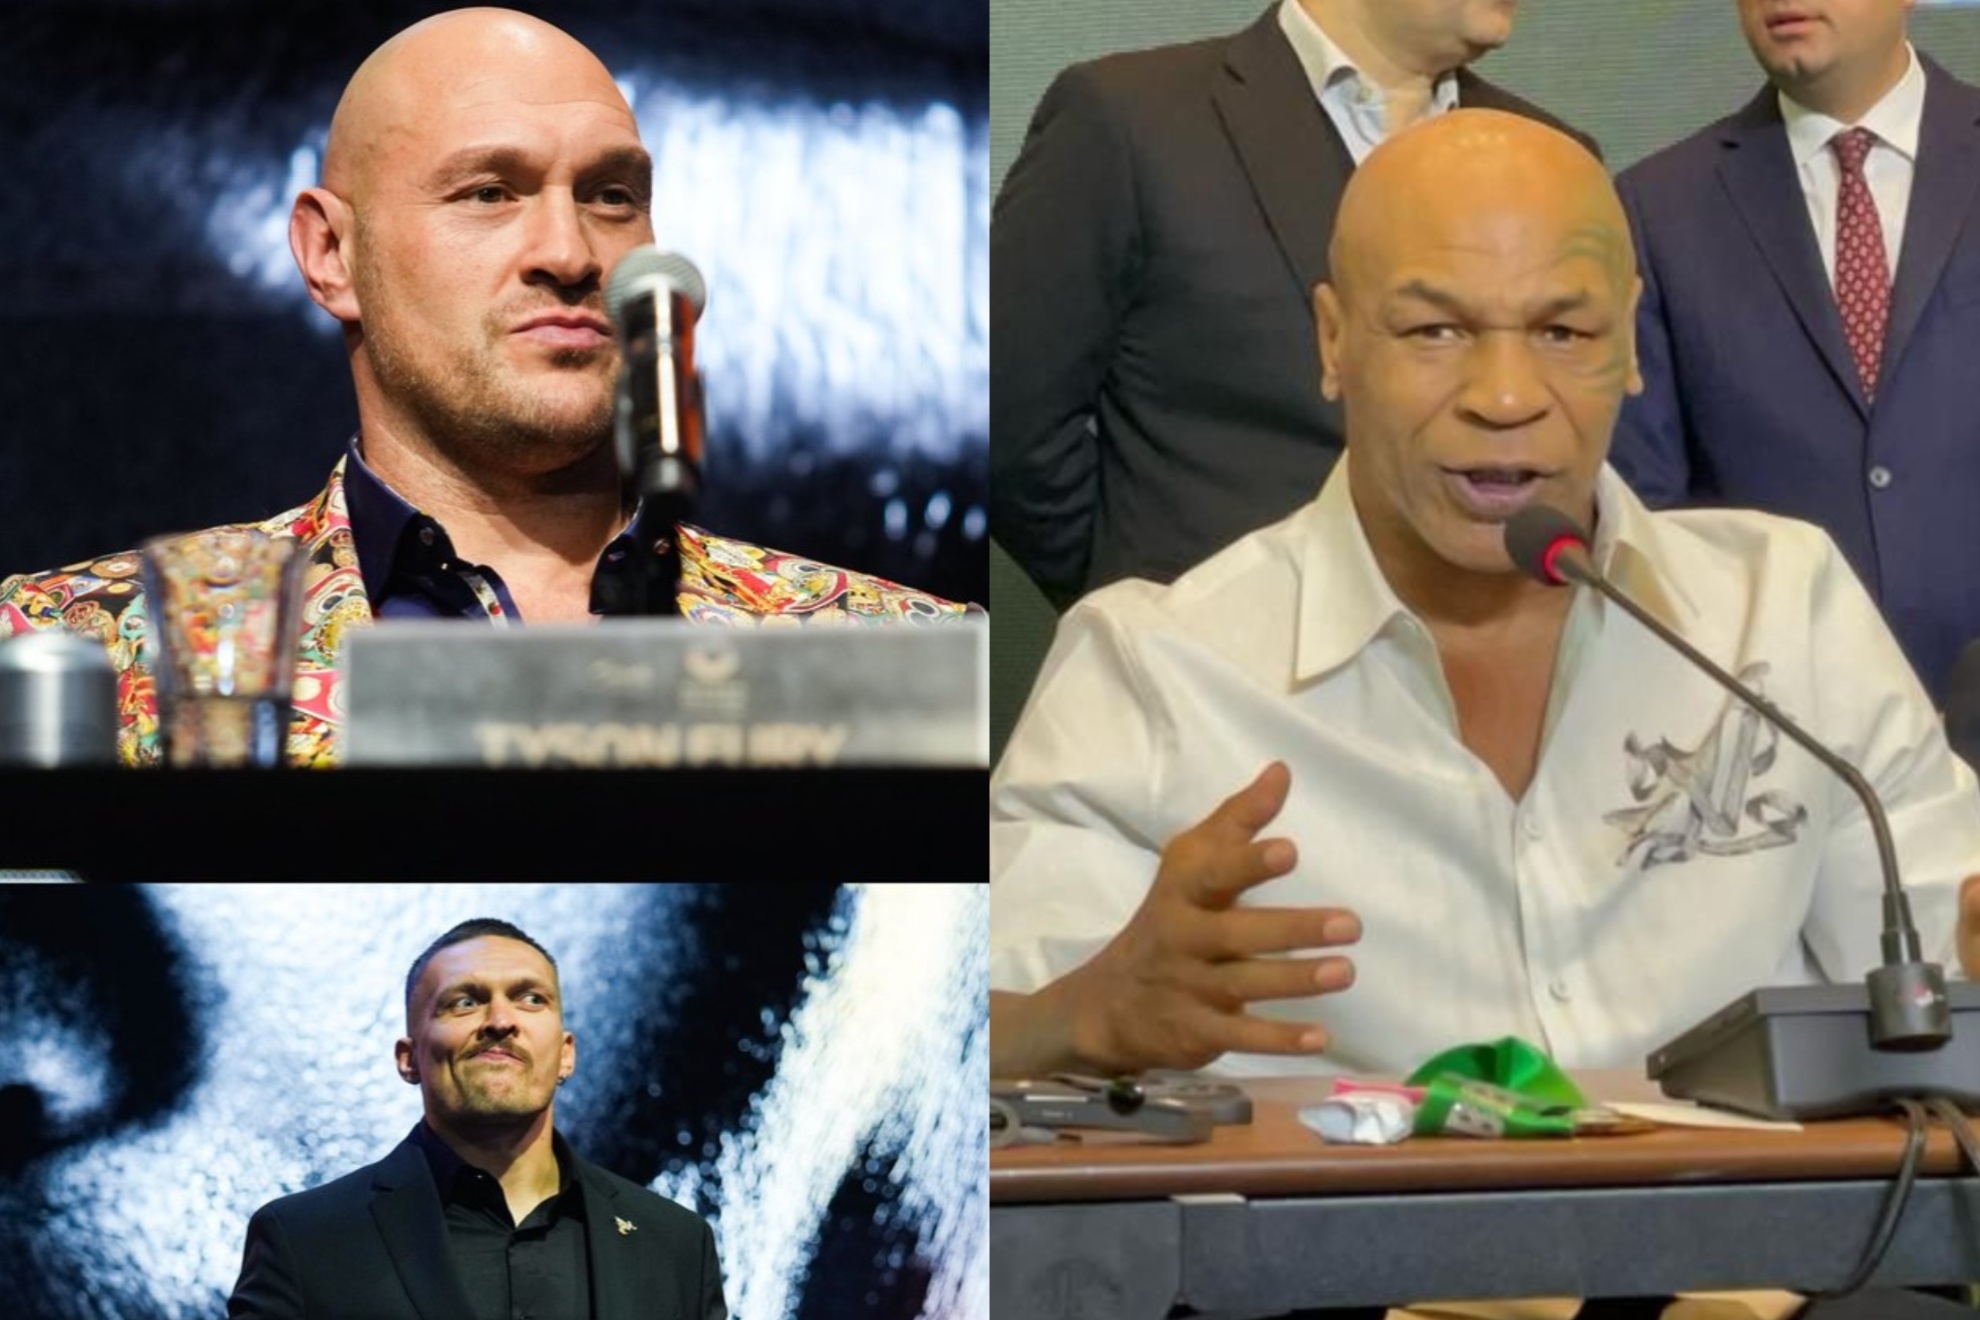 Mashup image of Mike Tyson, Tyson Fury and Oleksandr Usyk